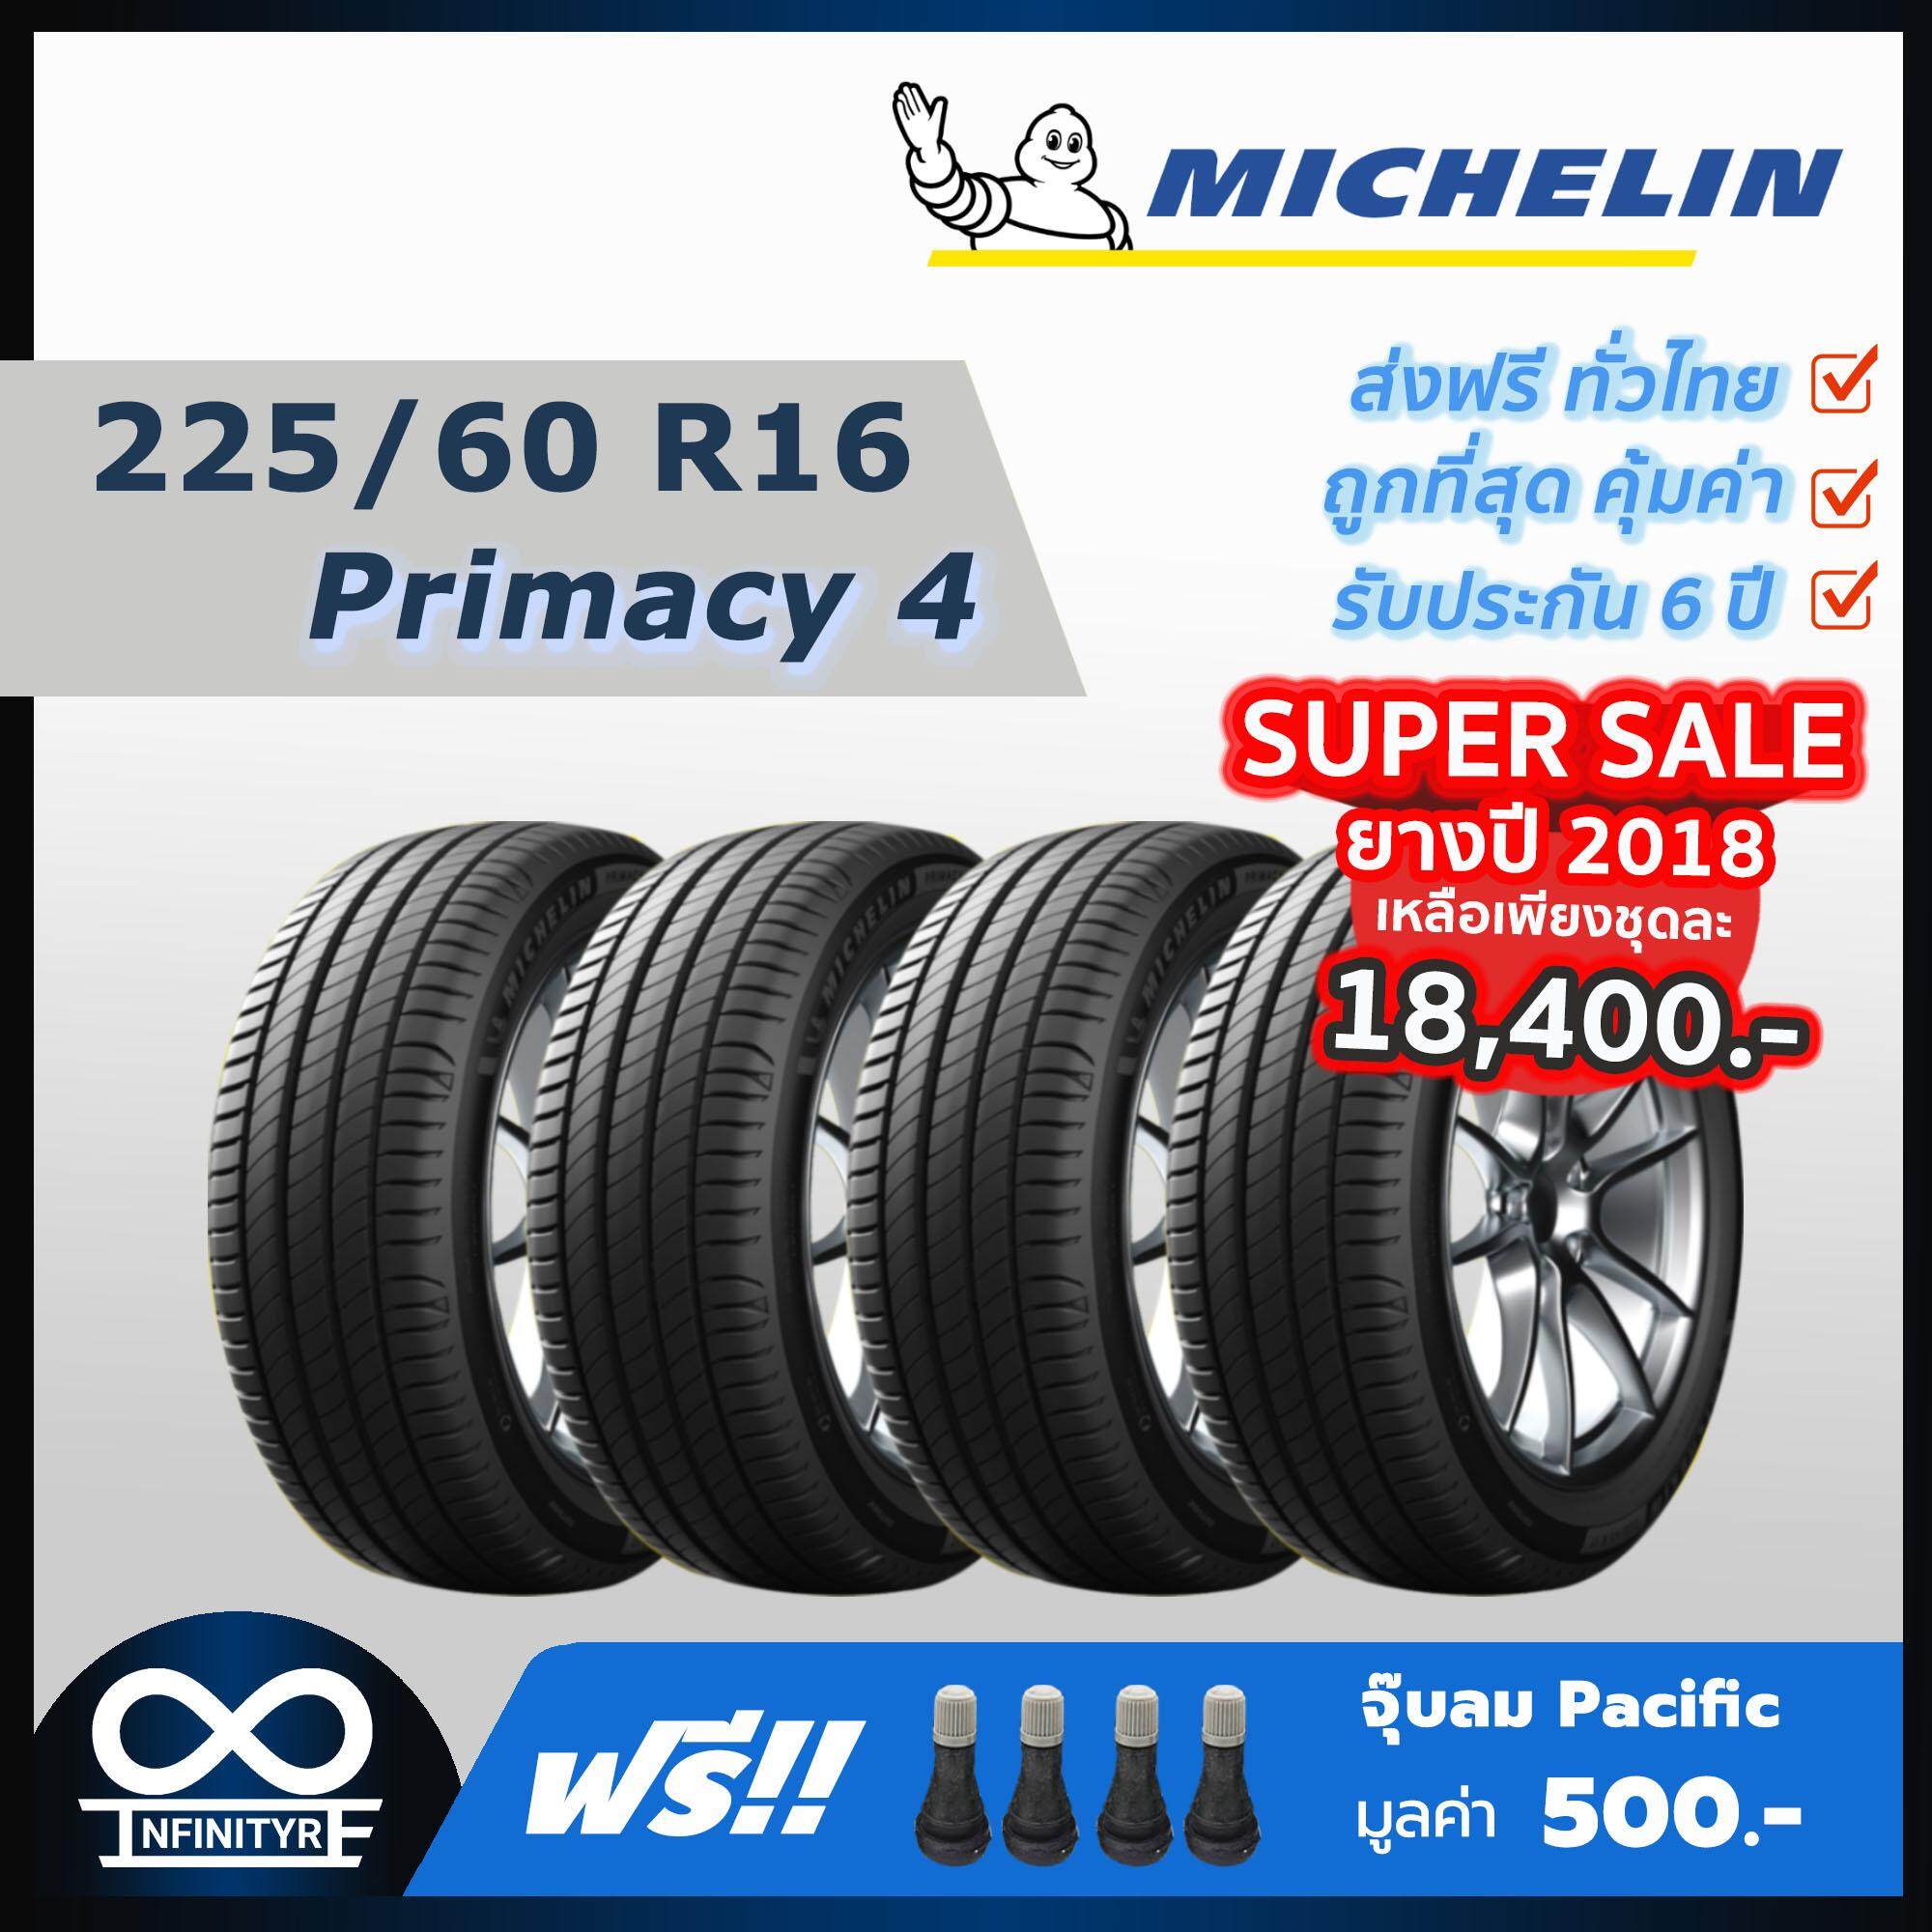 ประกันภัย รถยนต์ 3 พลัส ราคา ถูก ภูเก็ต 225/60R16 Michelin มิชลิน รุ่น Primacy 4 (ปี2018 ลดราคาจัดหนัก) 4เส้น ฟรี! จุ๊บลมPacific เกรดพรีเมี่ยม